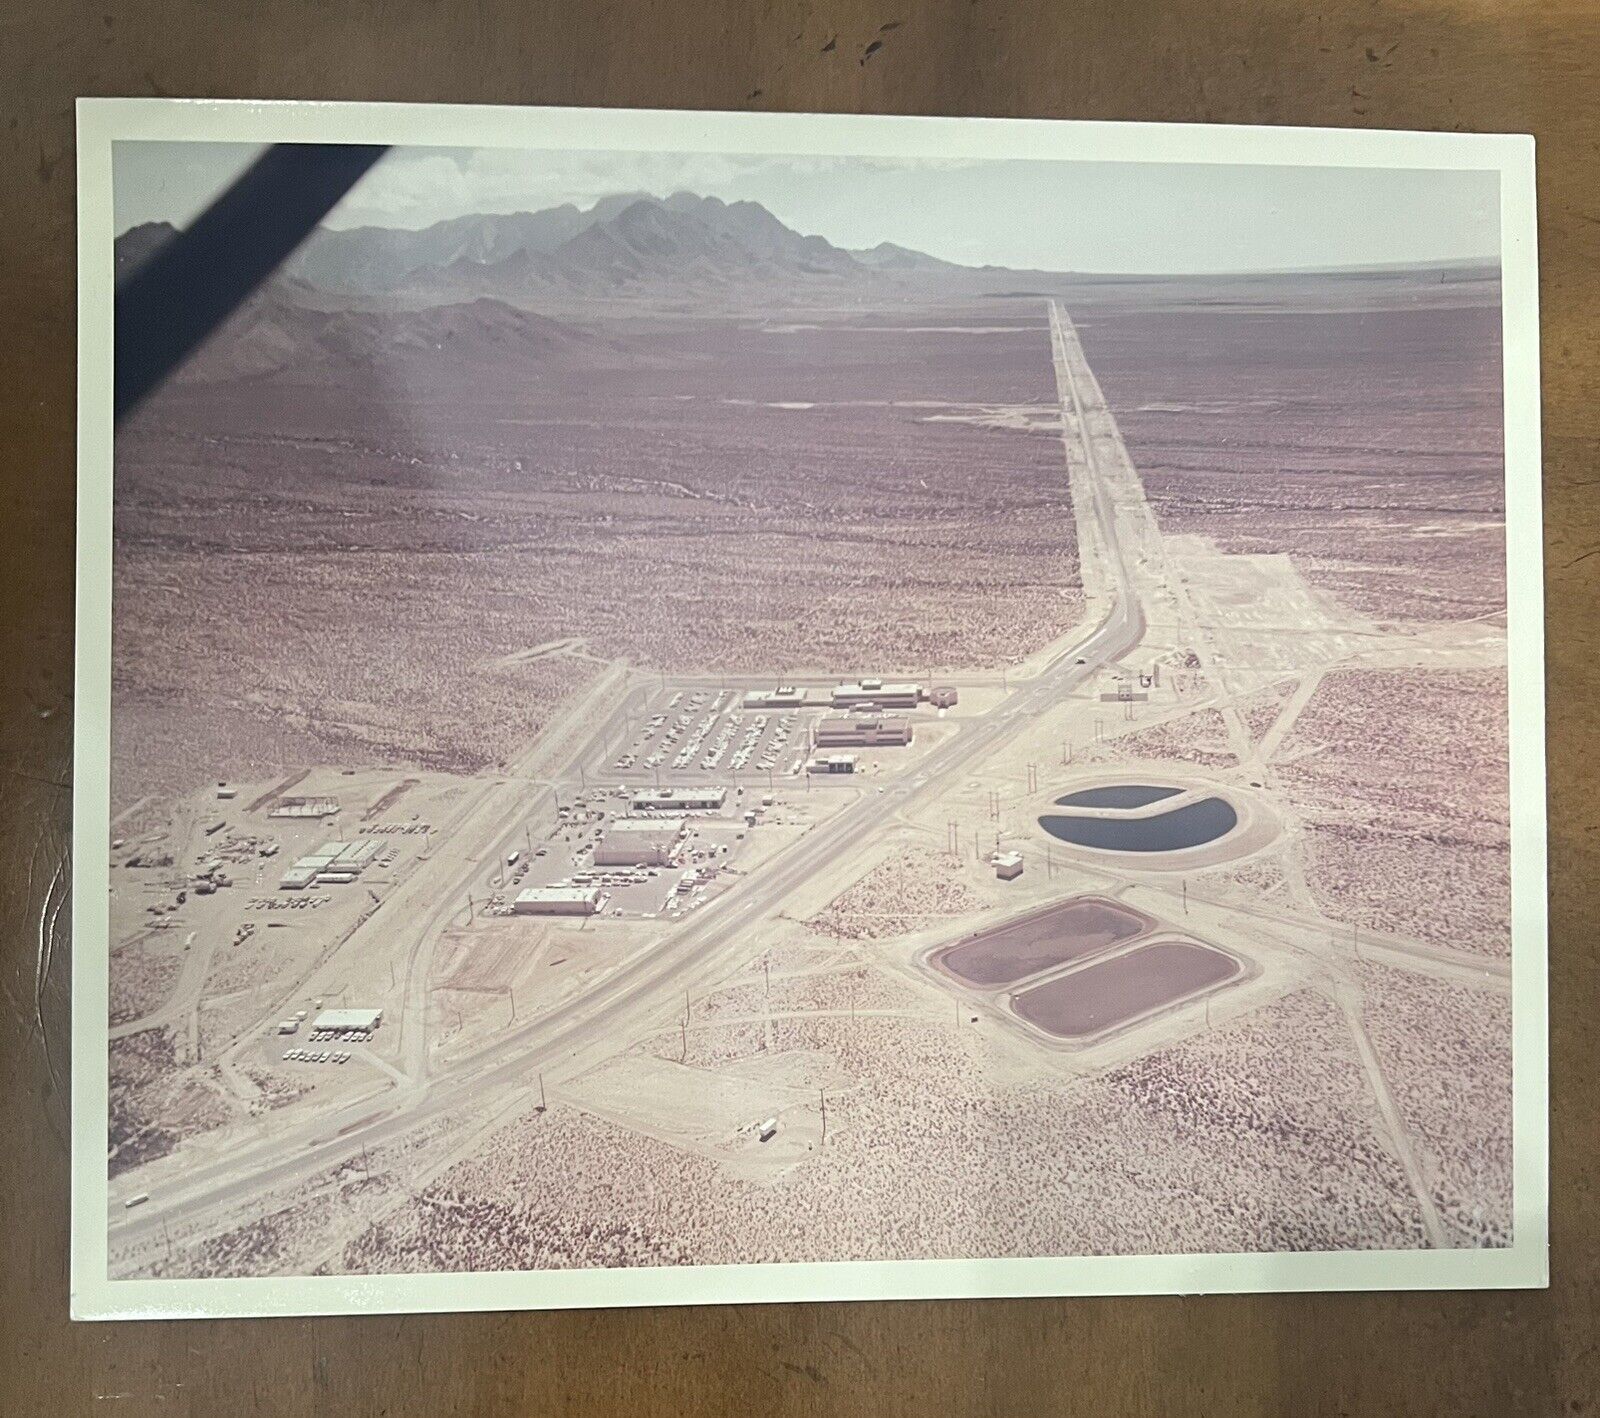 NASA Kodak Photo S-65-13620 On “A Kodak Paper” White Sands Test Facility NM